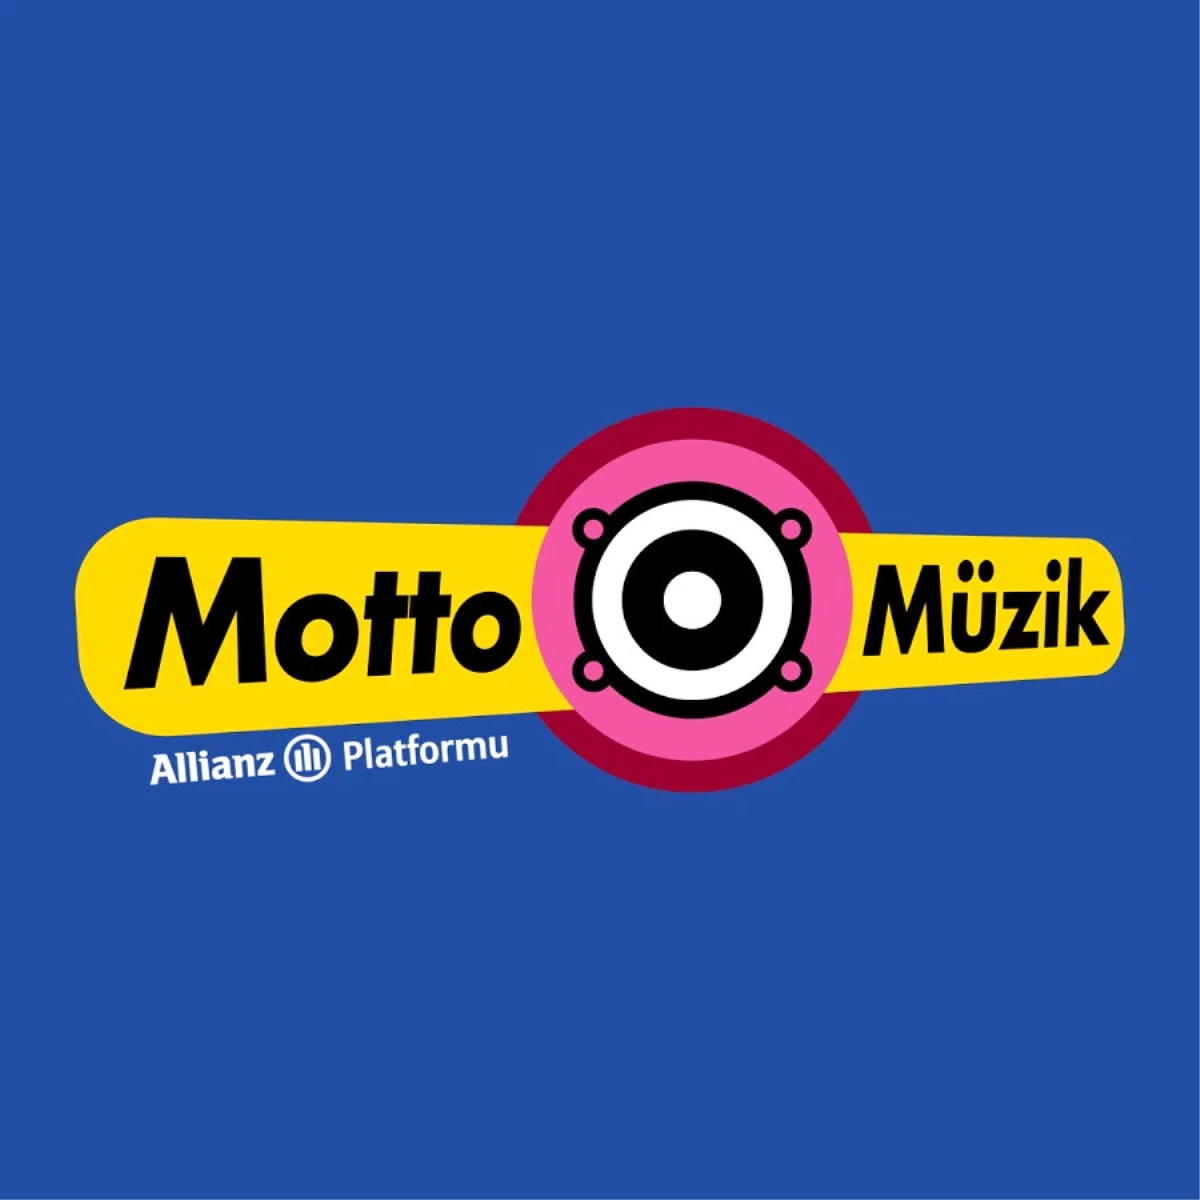 Allianz Motto Müzik için seçti